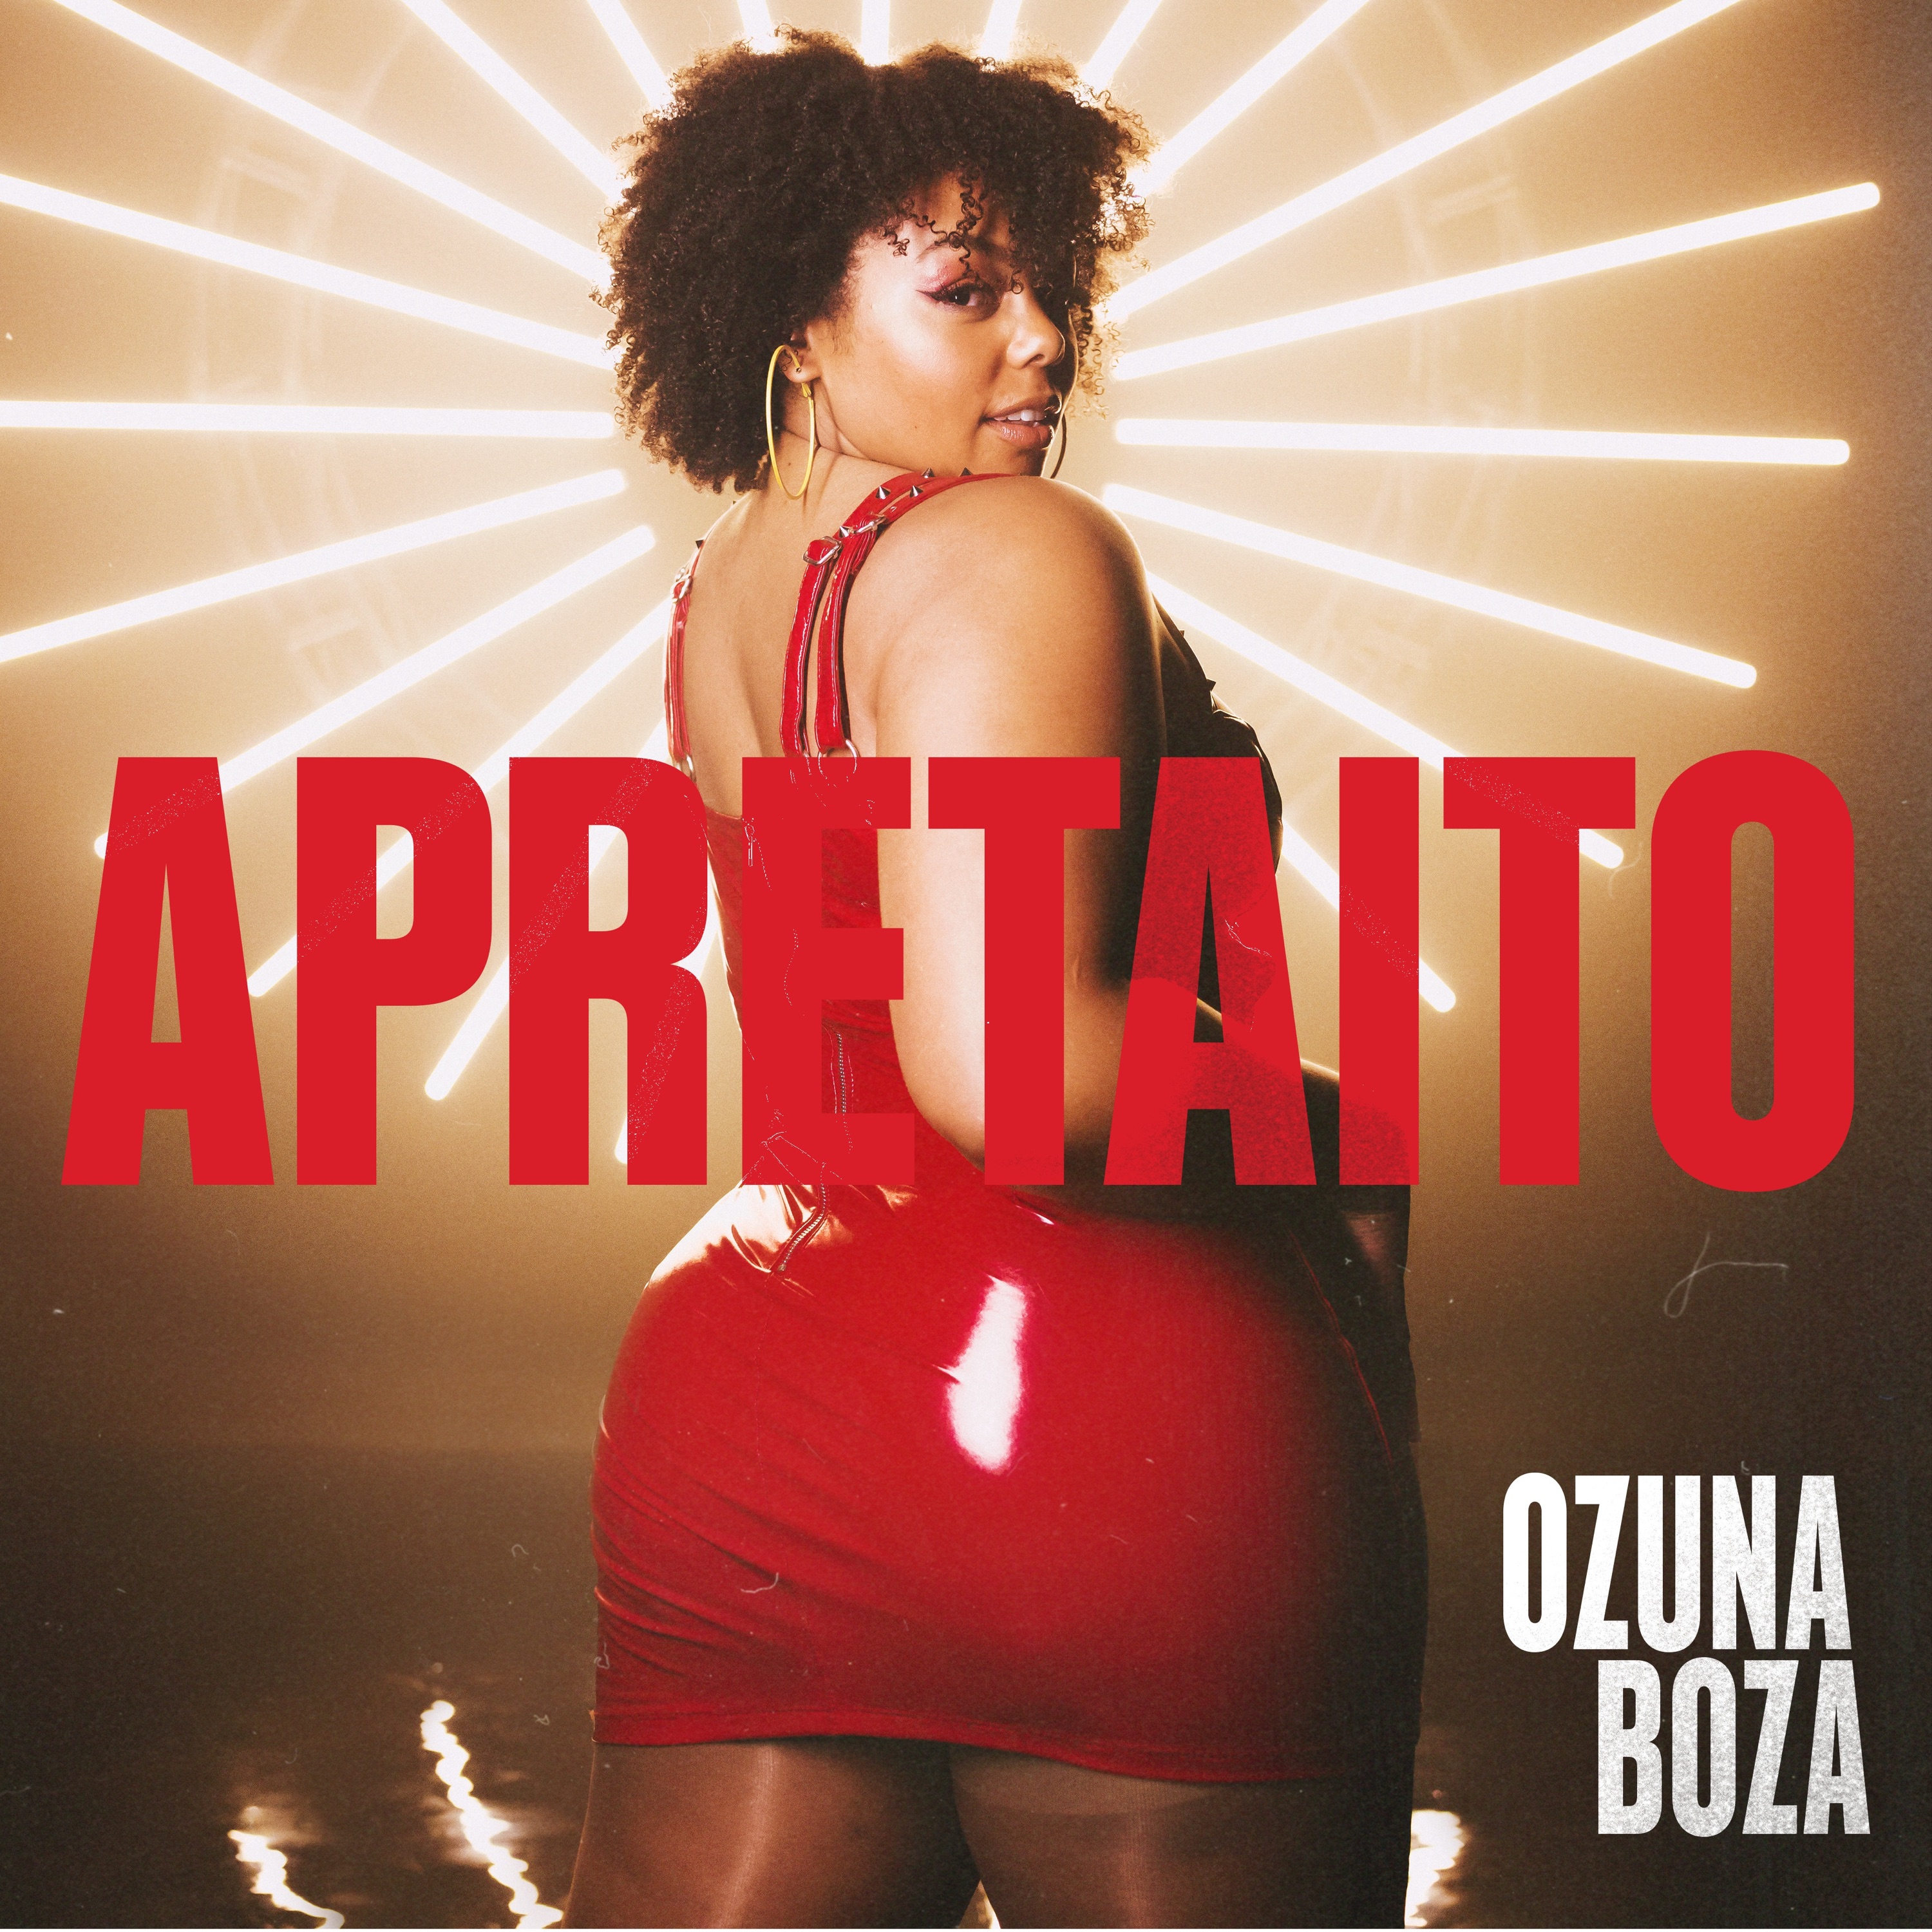 Ozuna y  Boza - Apretaito.mp3